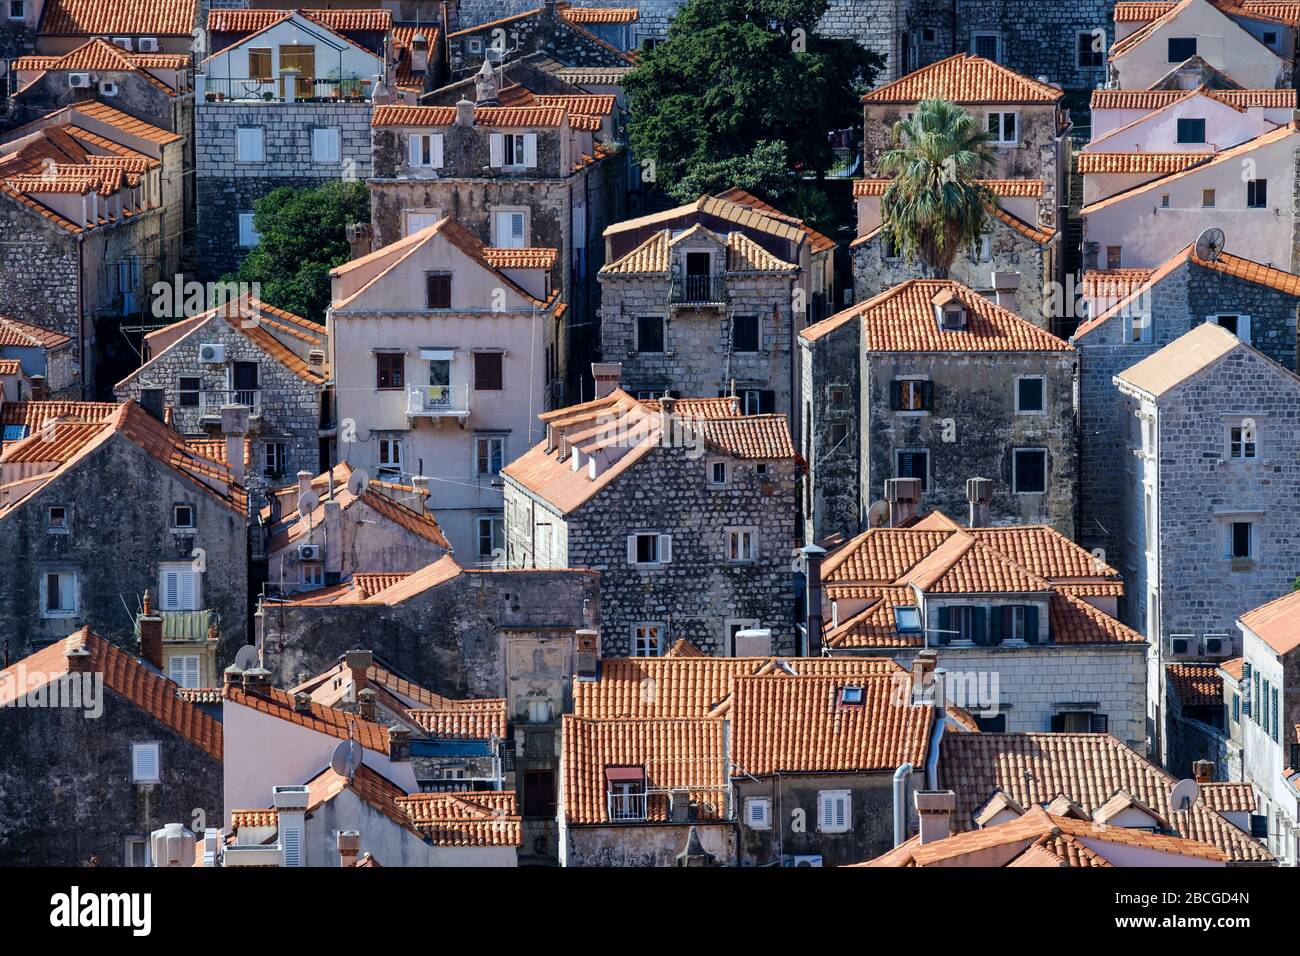 Una vista al casco antiguo de Dubrovnik. Muestra las casas y edificios densamente llenos y sus distintivos tejados de tejas rojas Foto de stock